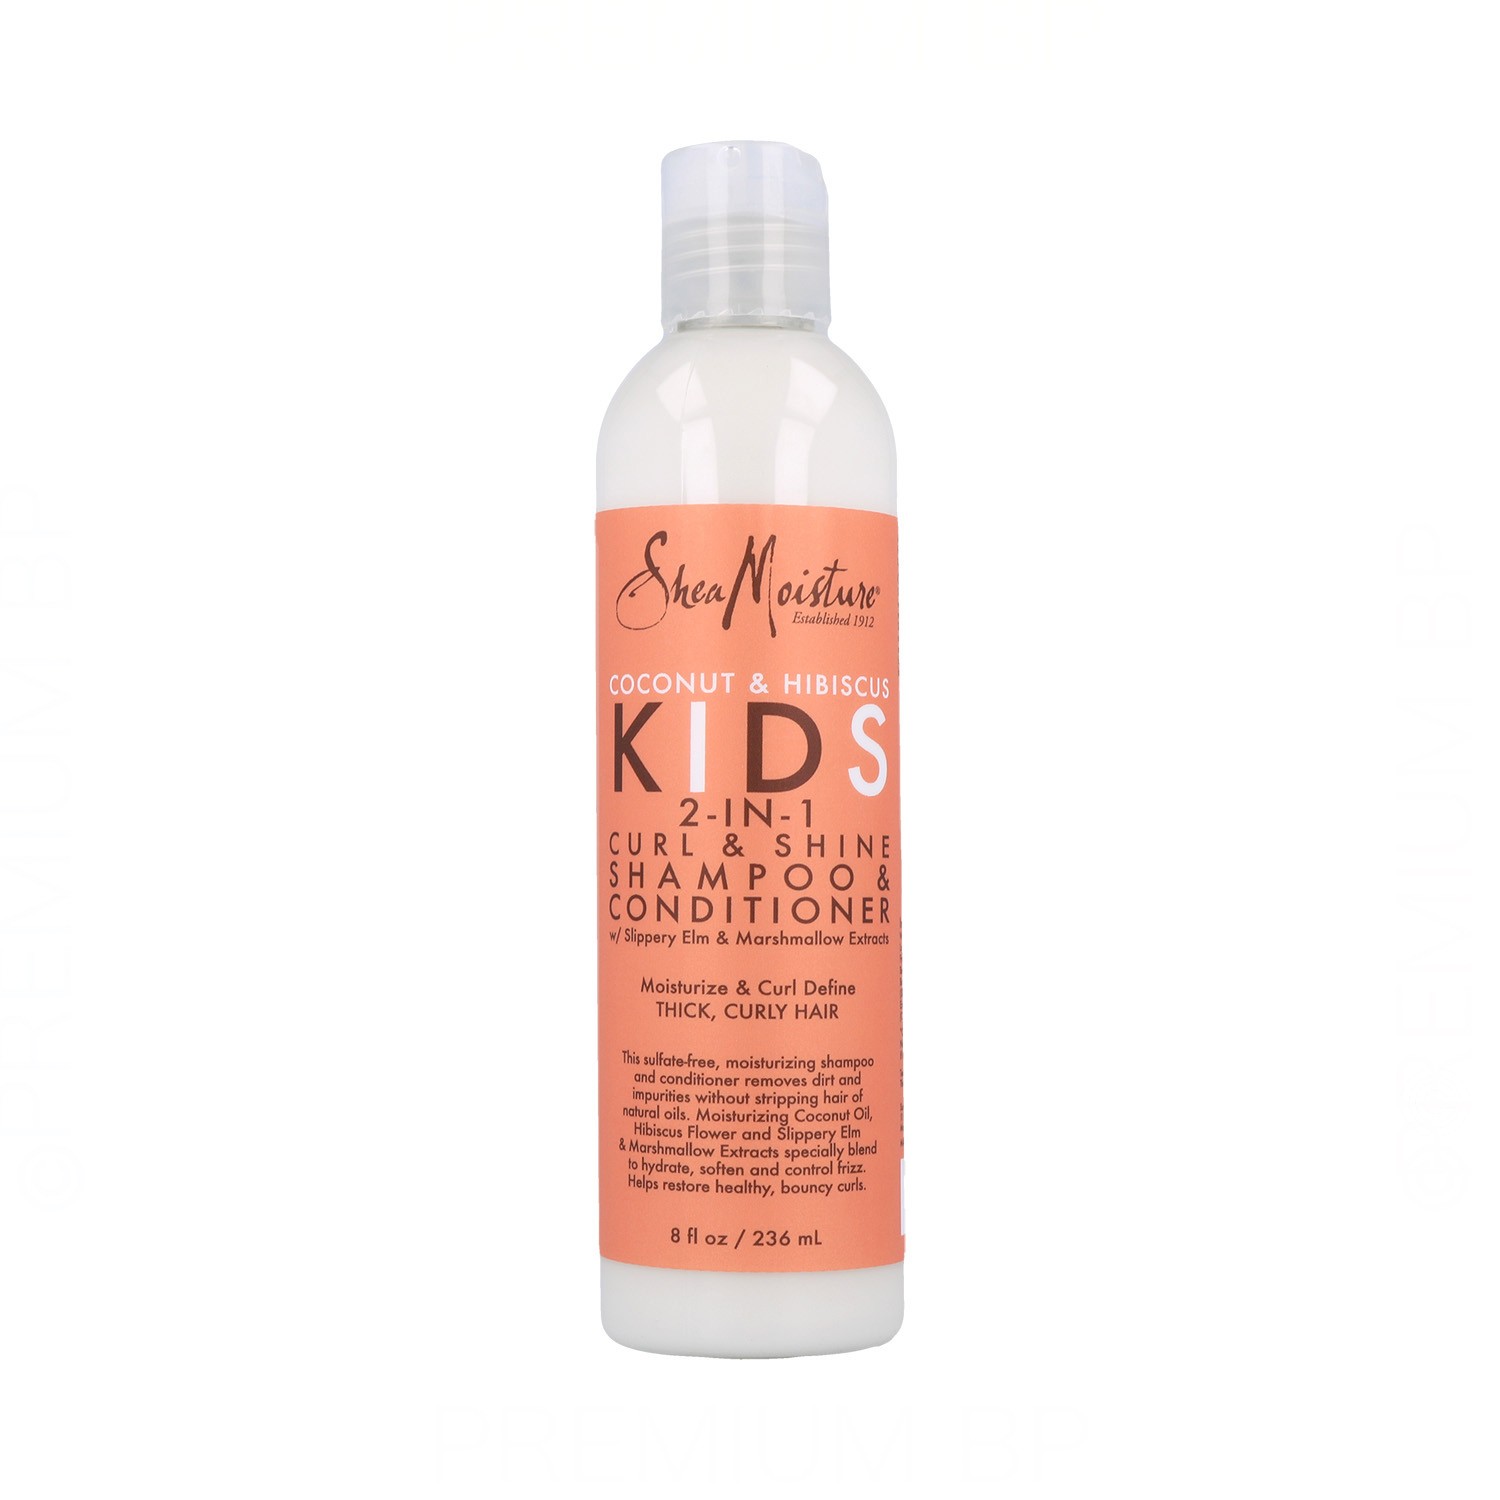 Shea Moisture Coconut & Hibiscus Kids 2-In-1 Shampoo & Condizionatore 8Oz/236 ml